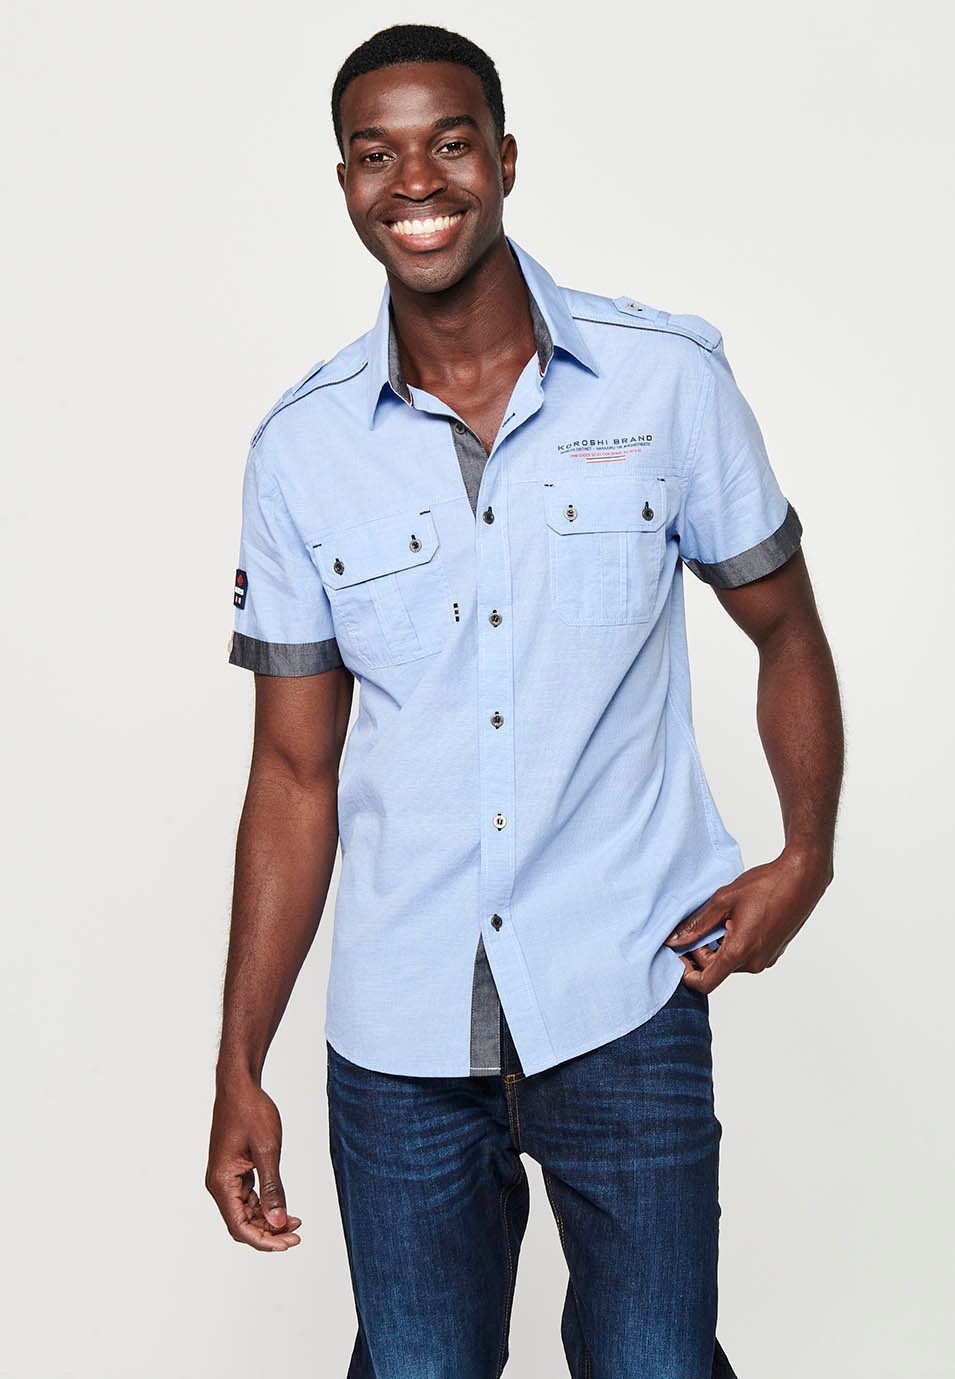 Cotton shirt, short sleeve, shoulder details, blue color for men